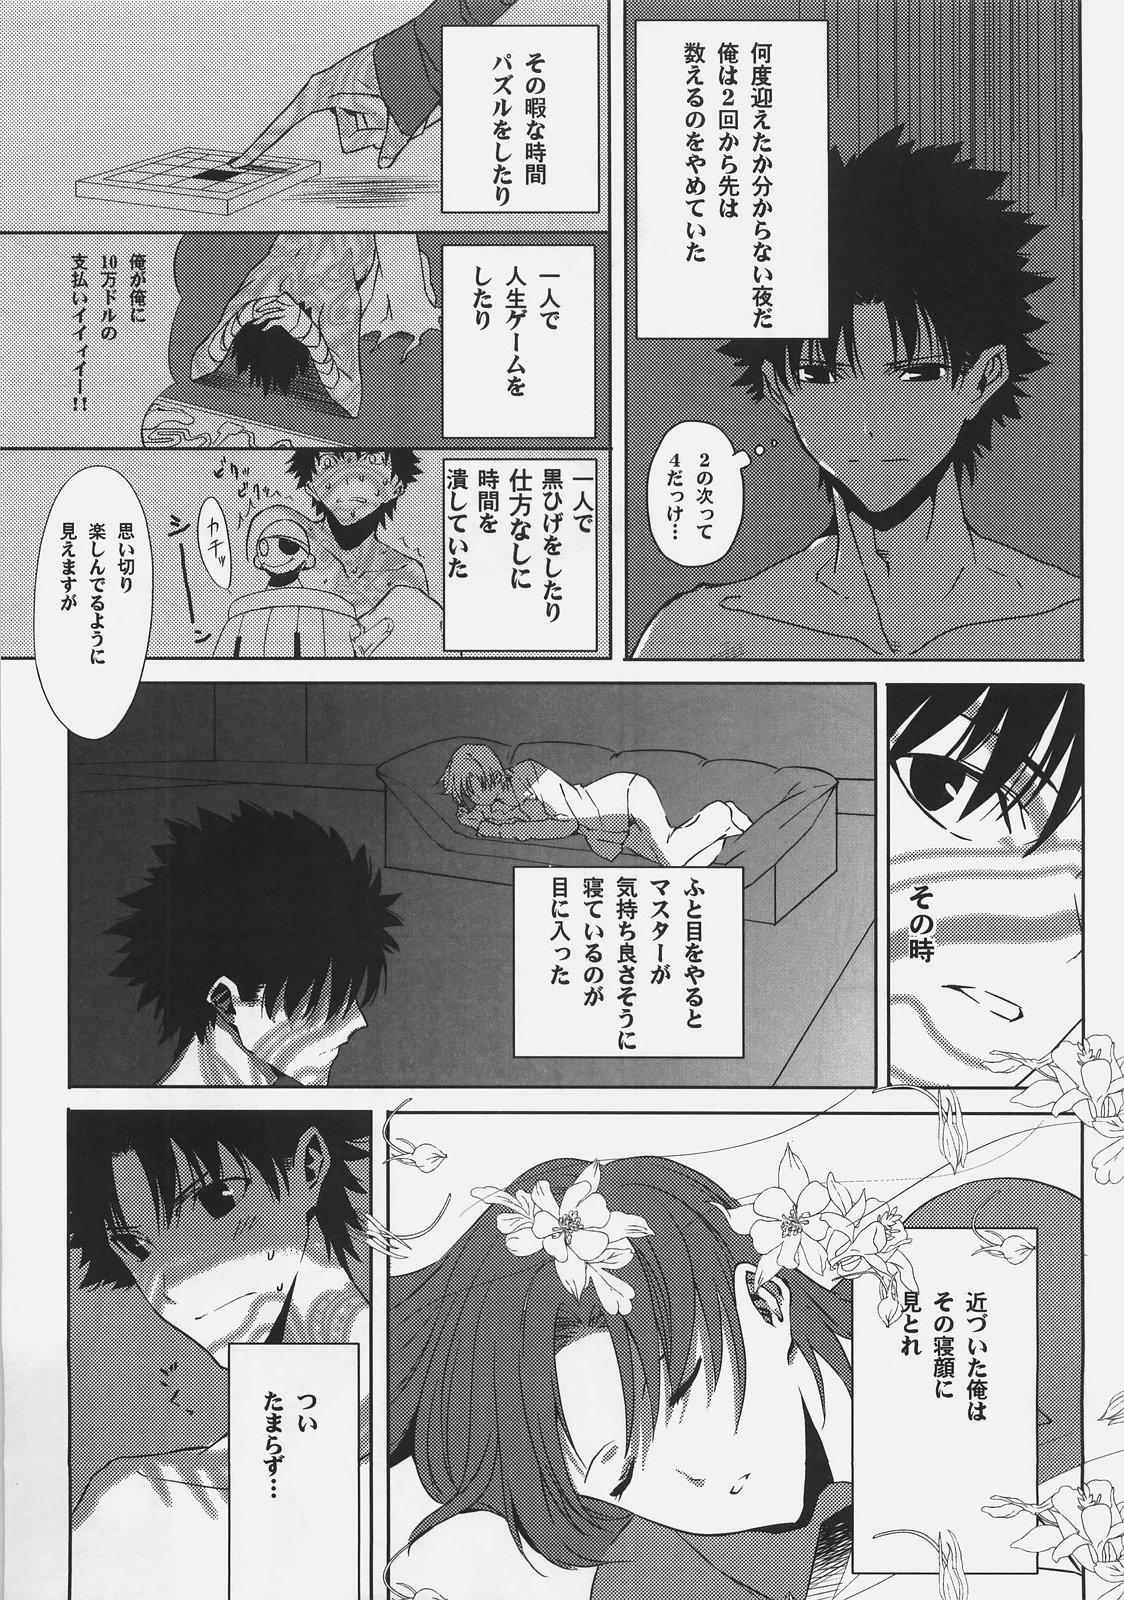 Long Souda Kyoukai ni Nigeyou - Fate hollow ataraxia Boyfriend - Page 7